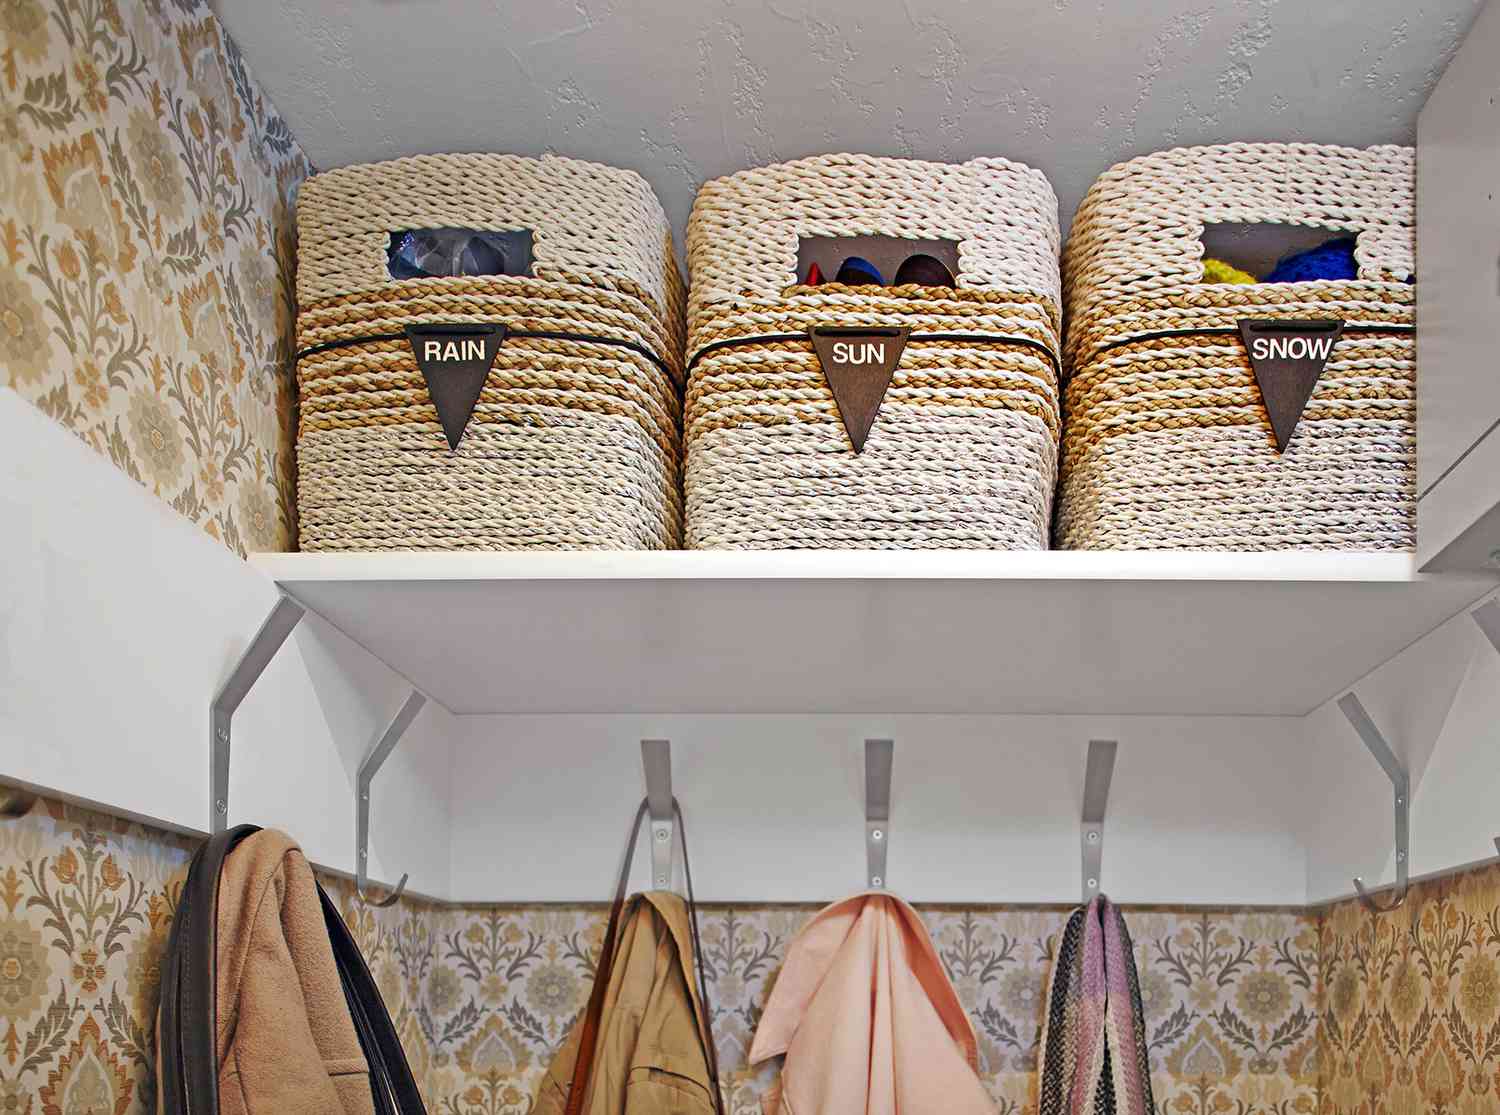 woven baskets for rain sun snow clothes